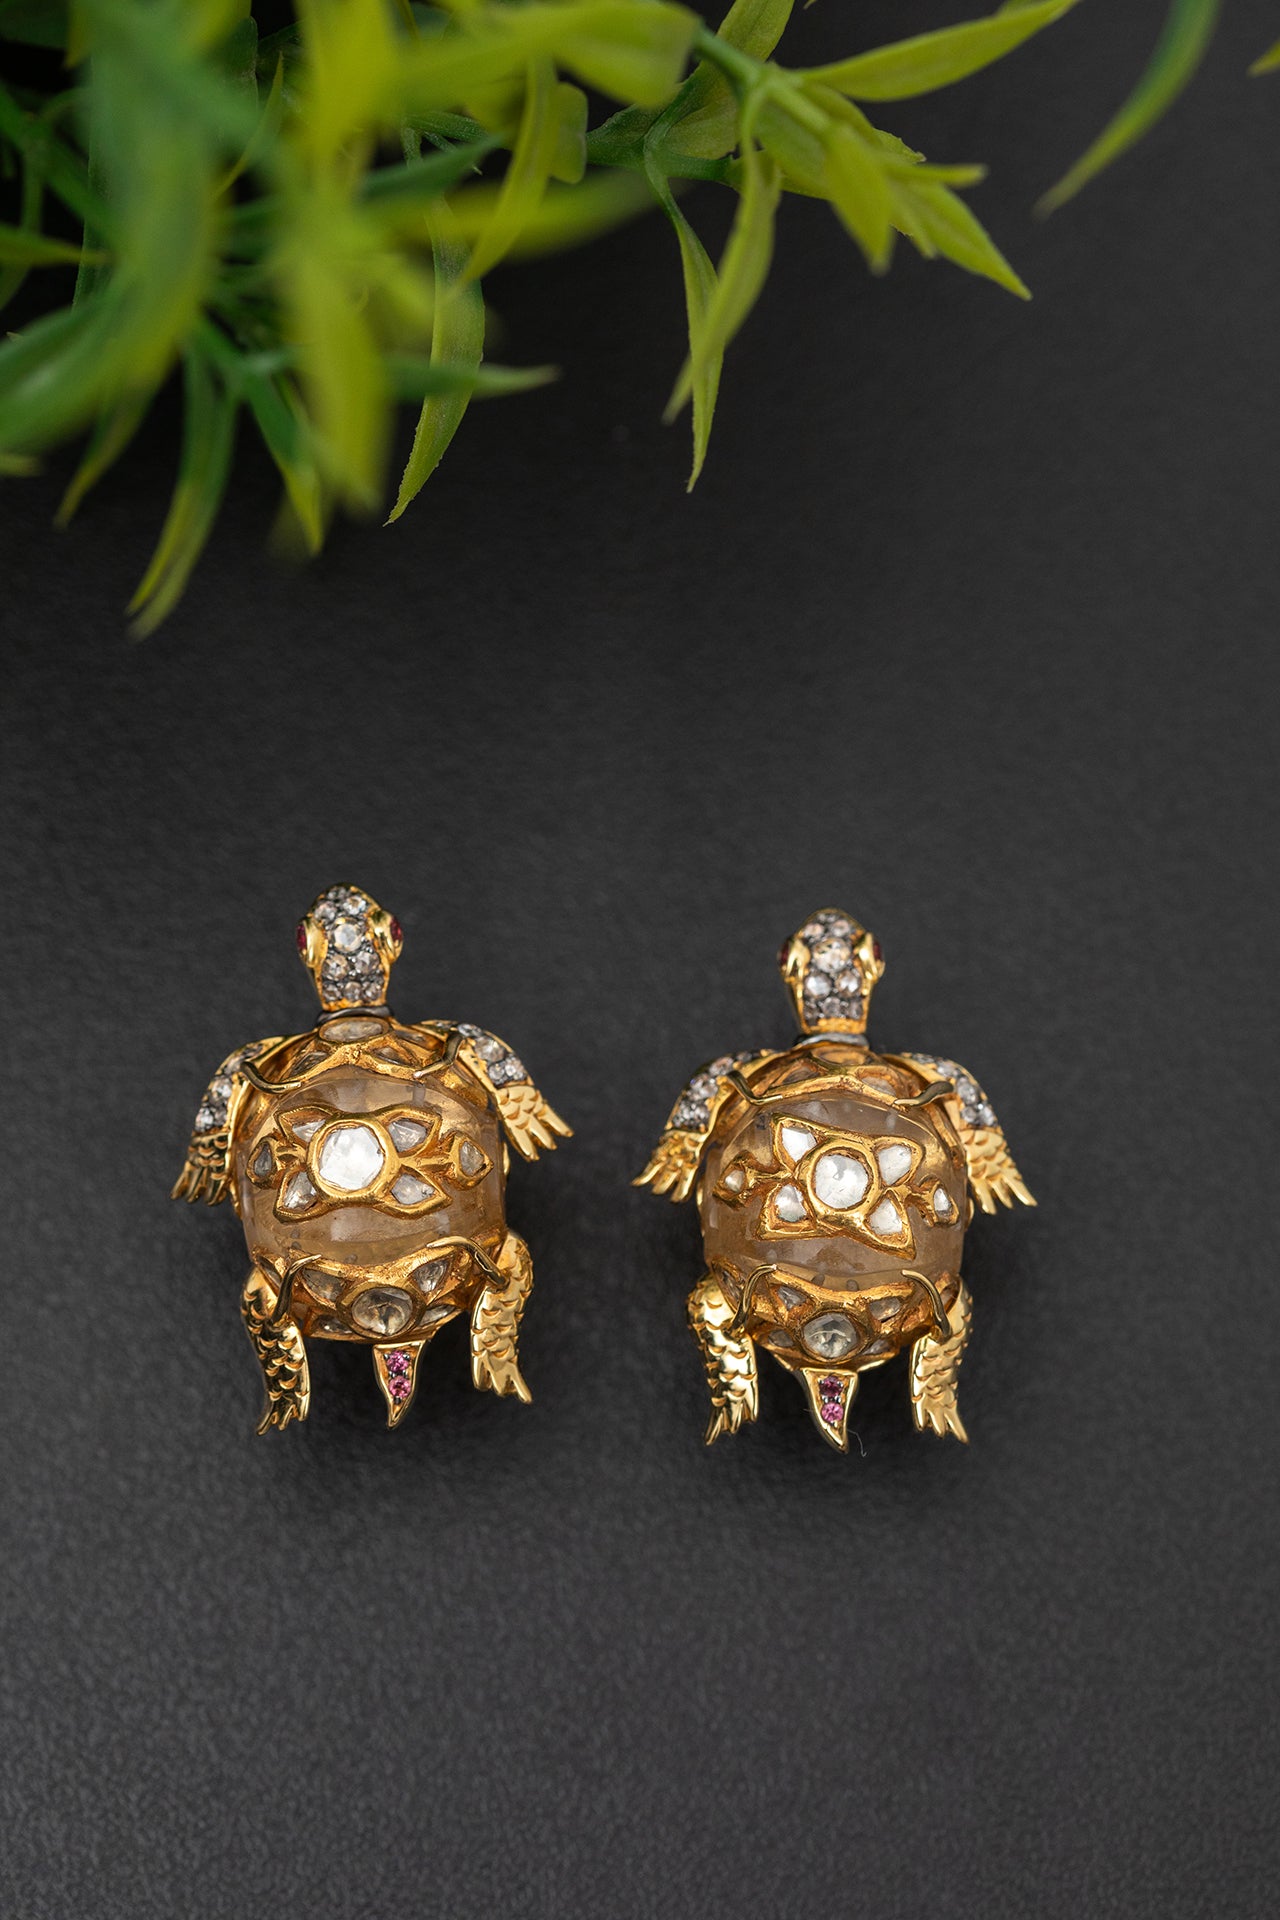 Diamond and Crystal Studded Sea Turtle Earrings